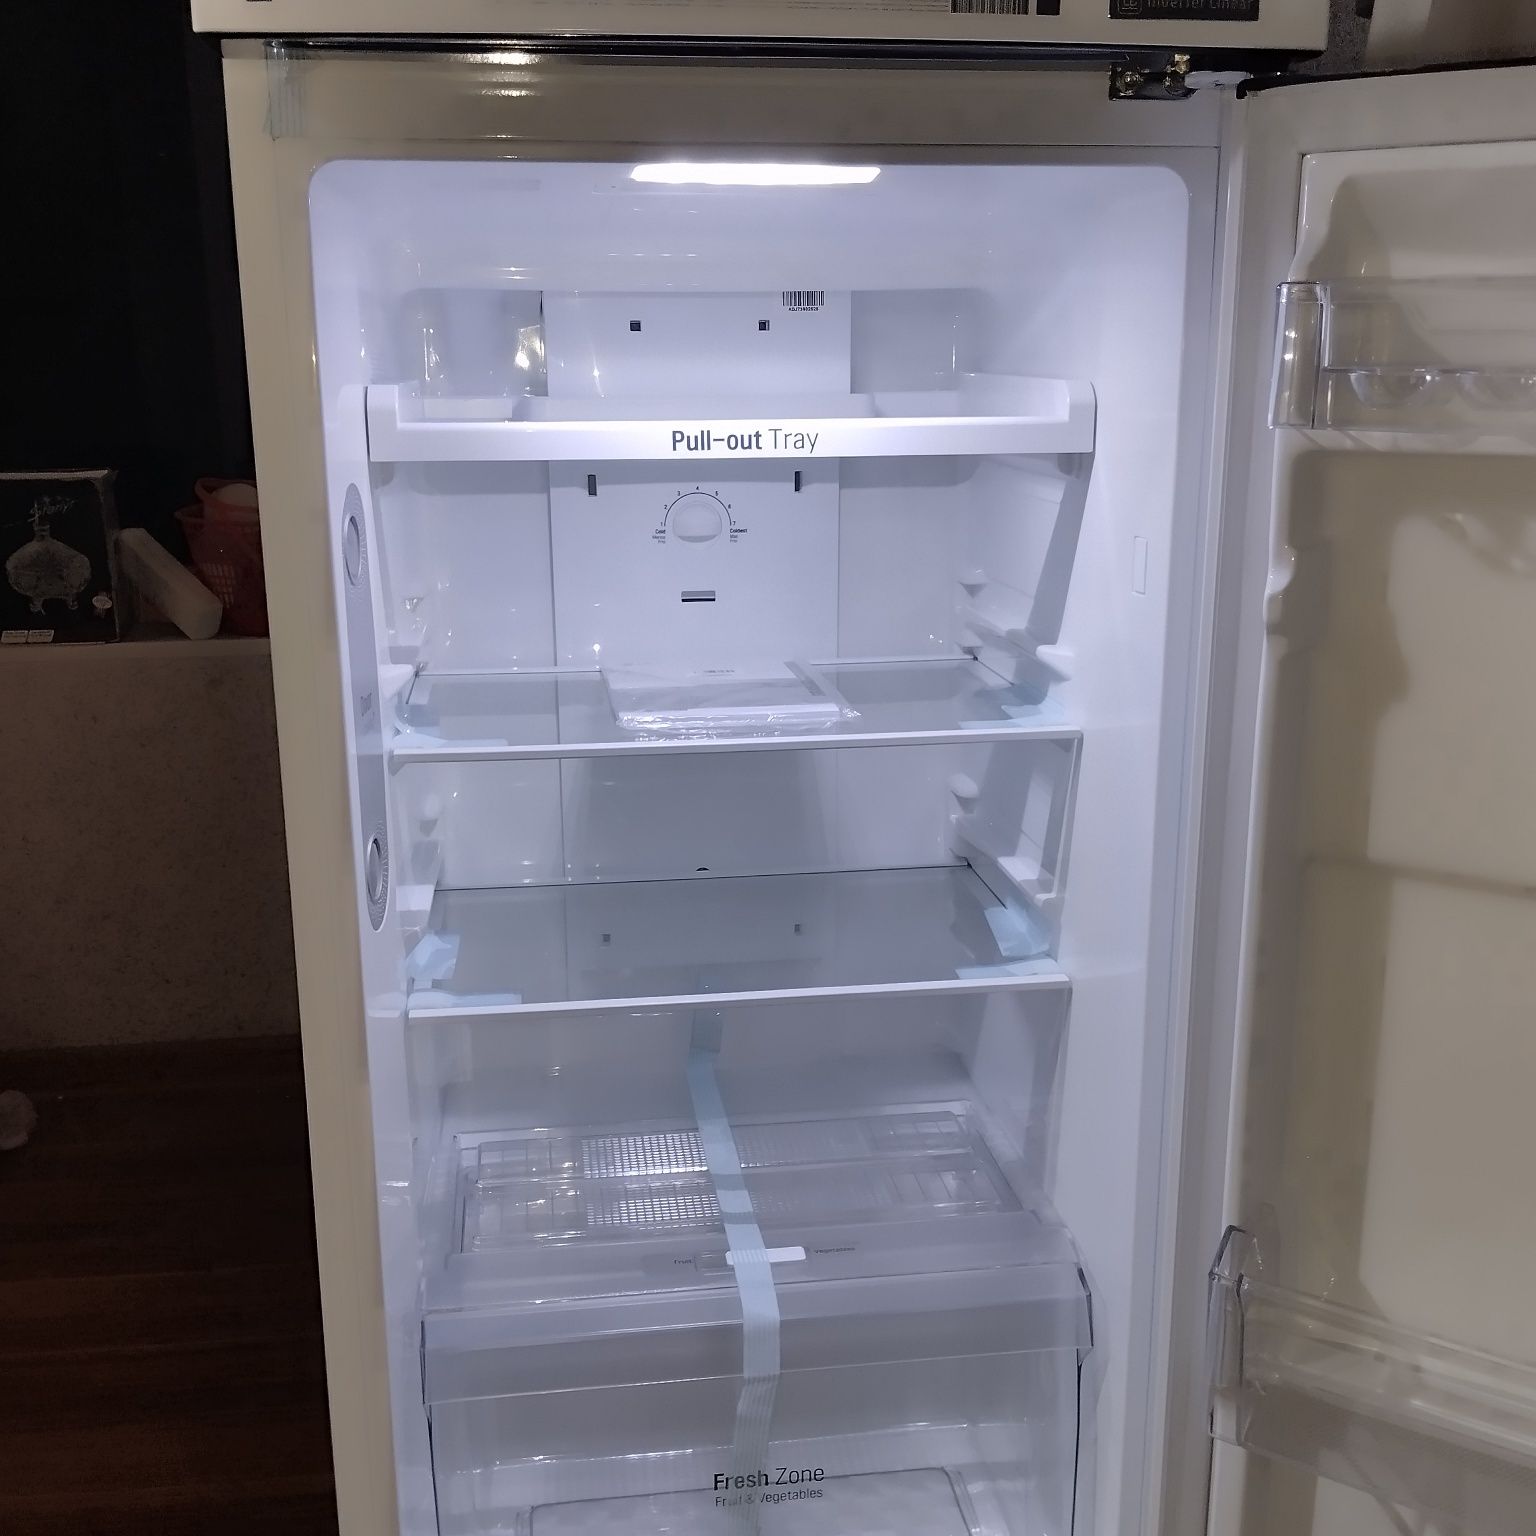 Новый Холодильник LG